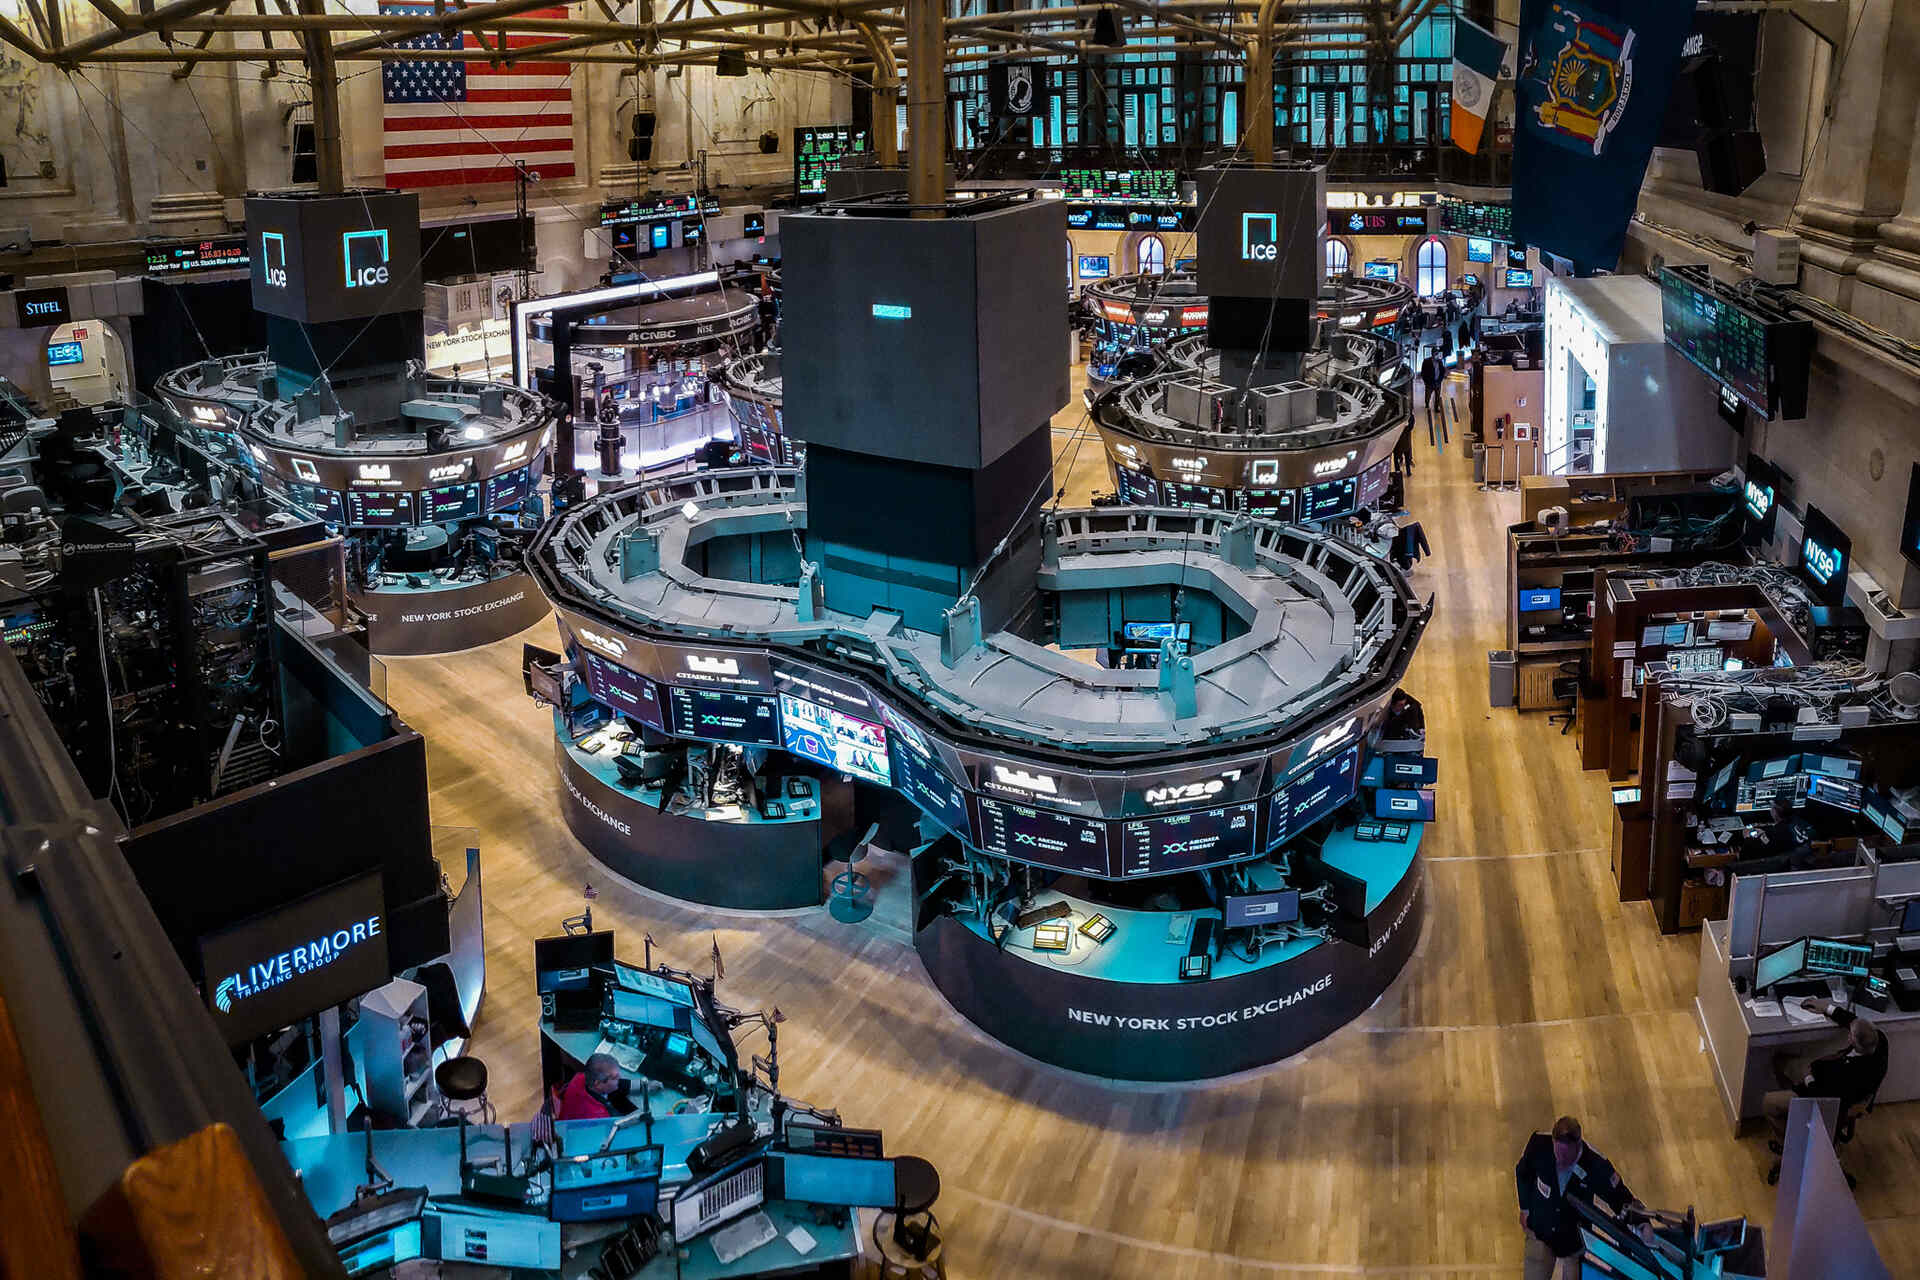 ETF: obchodní platforma newyorské burzy (New York Stock Exchange nebo zkratka NYSE), založená na slavné Wall Street a založená již v roce 1817